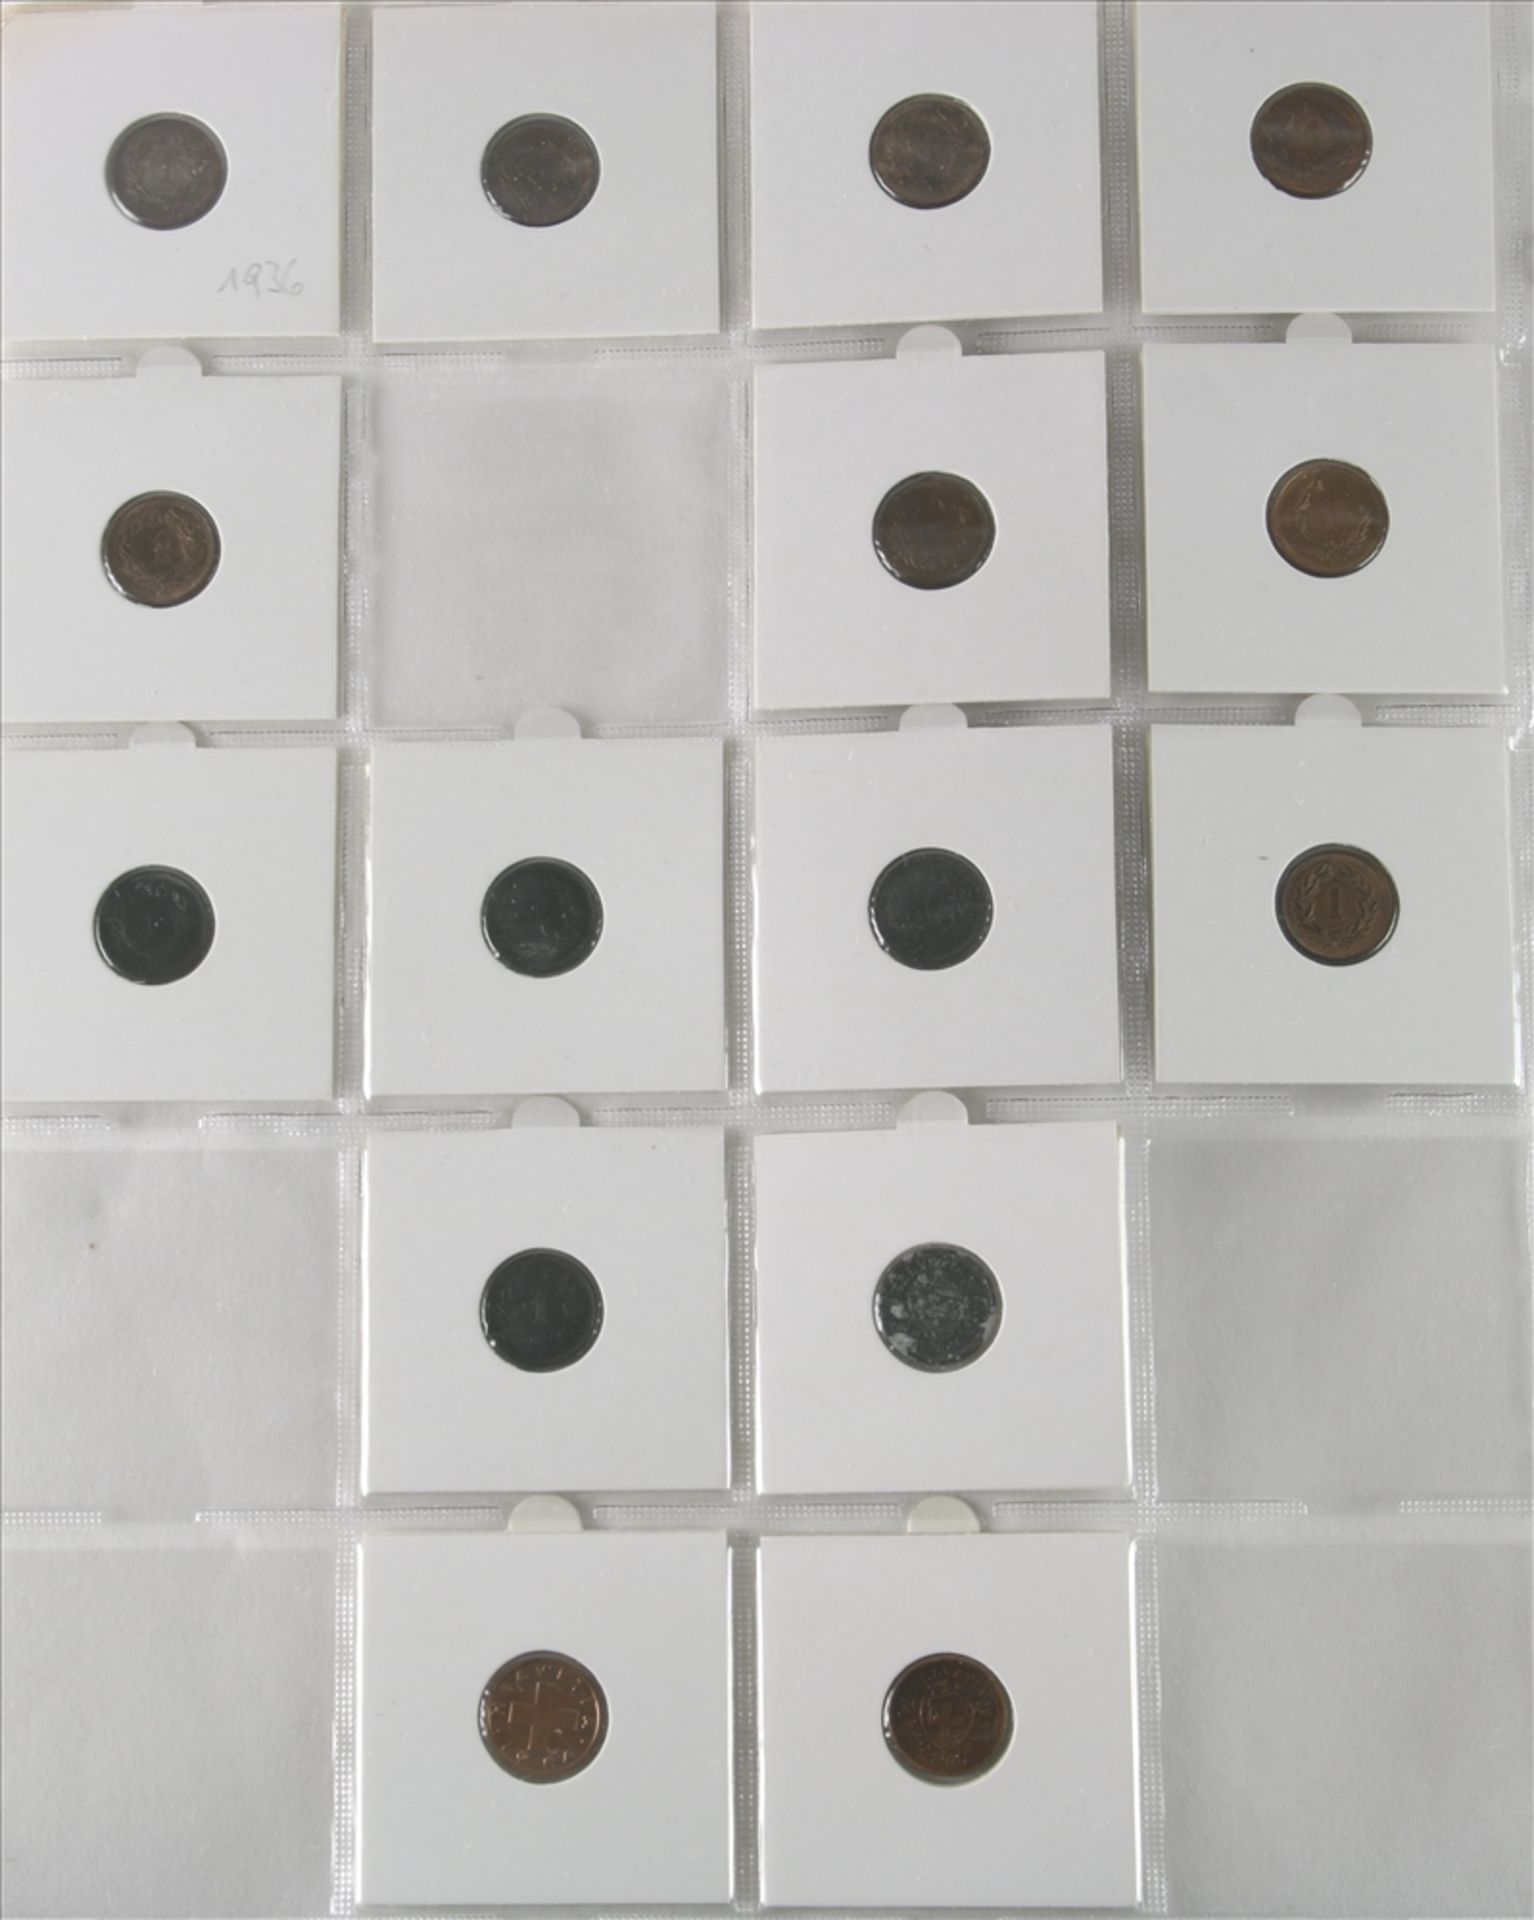 Konvolut Münzen 1-5-Rappen Stücke, Schweiz ab 1850. Unterschiedliche Jahrgänge und Zustände. U.a. - Bild 3 aus 5